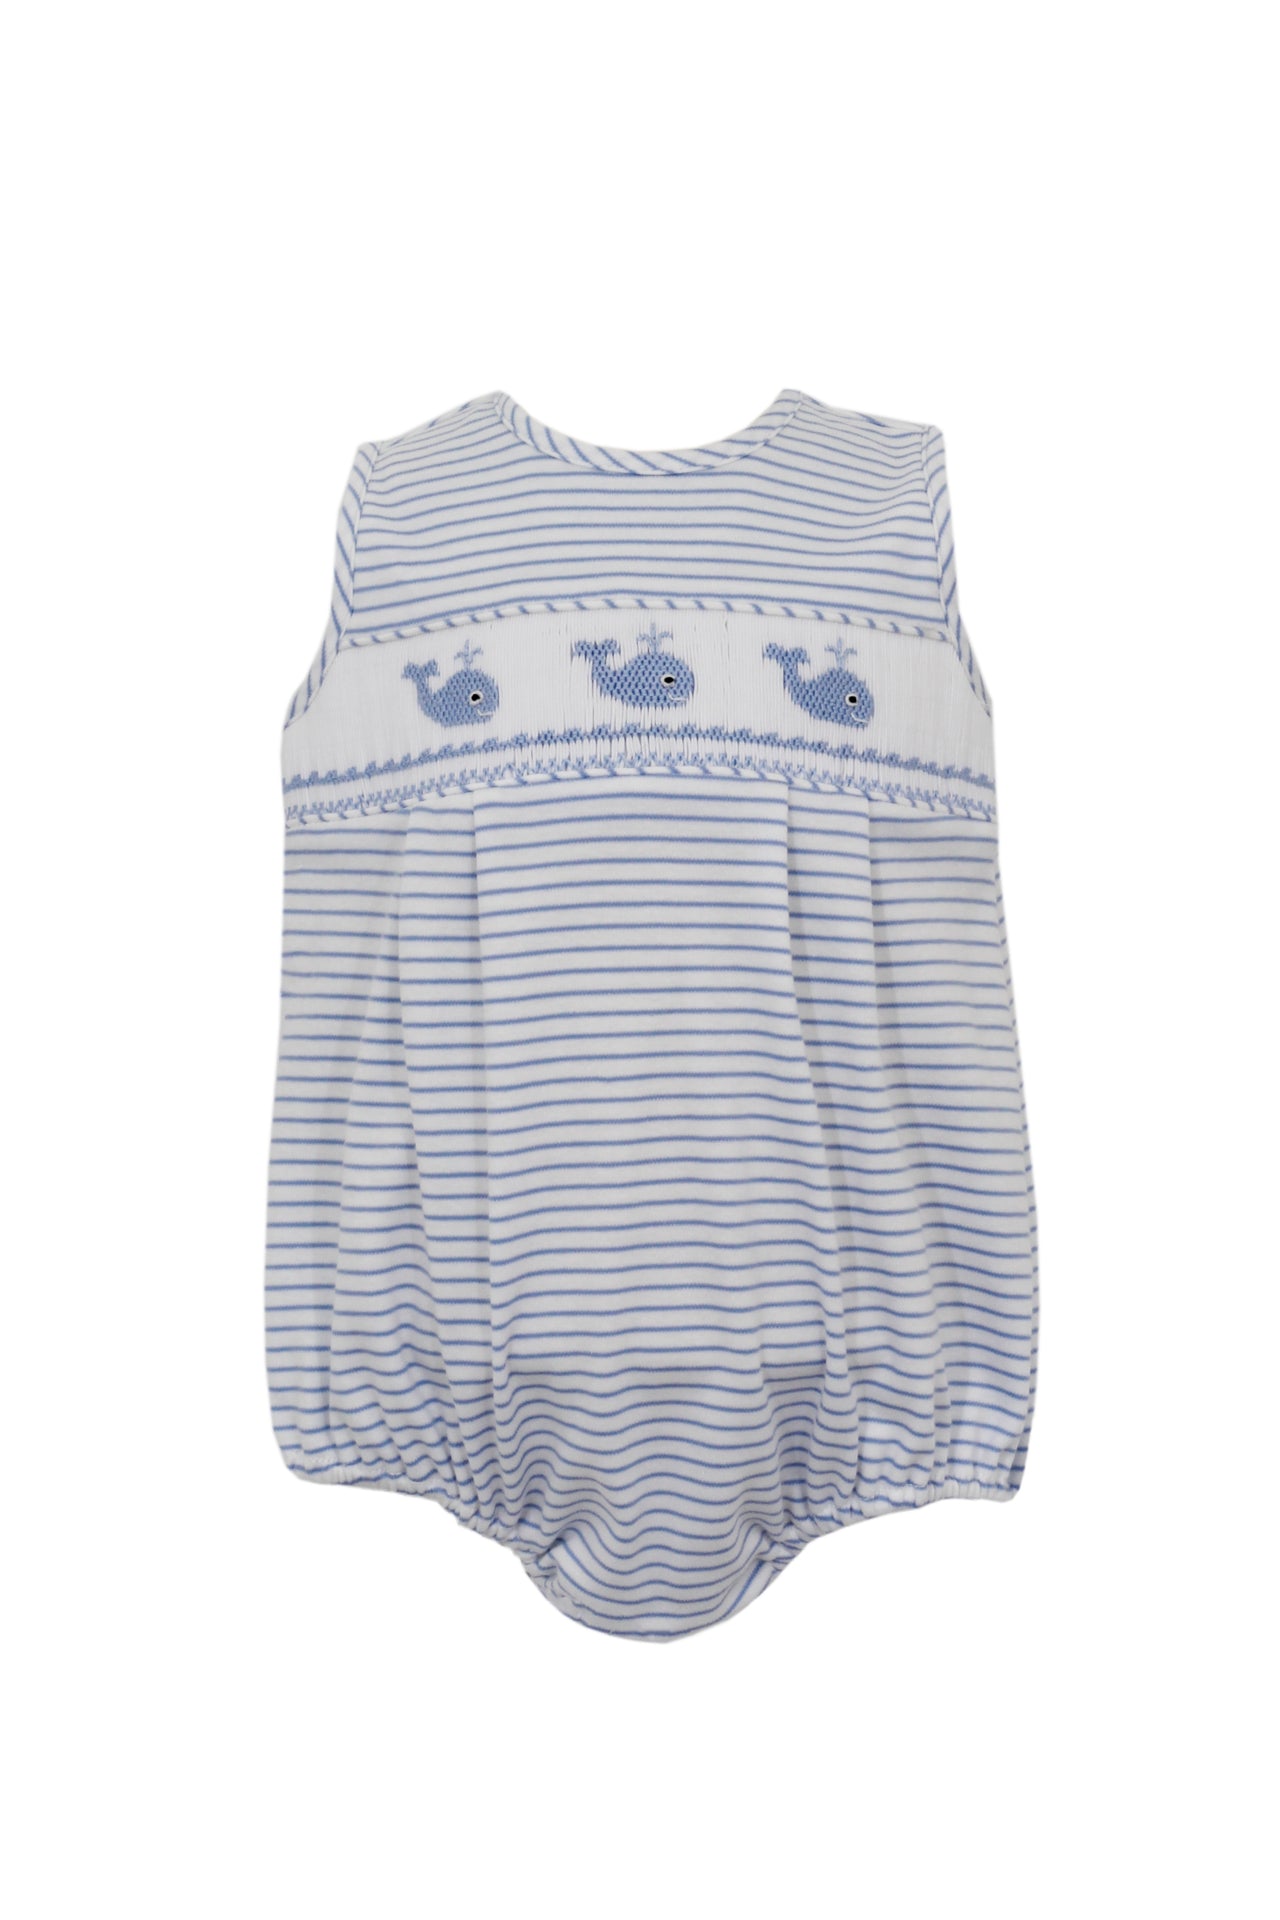 Petit Bebe Lt Blue Stripe Knit Boy's Sunbubble Whale 435H-MS24 5103